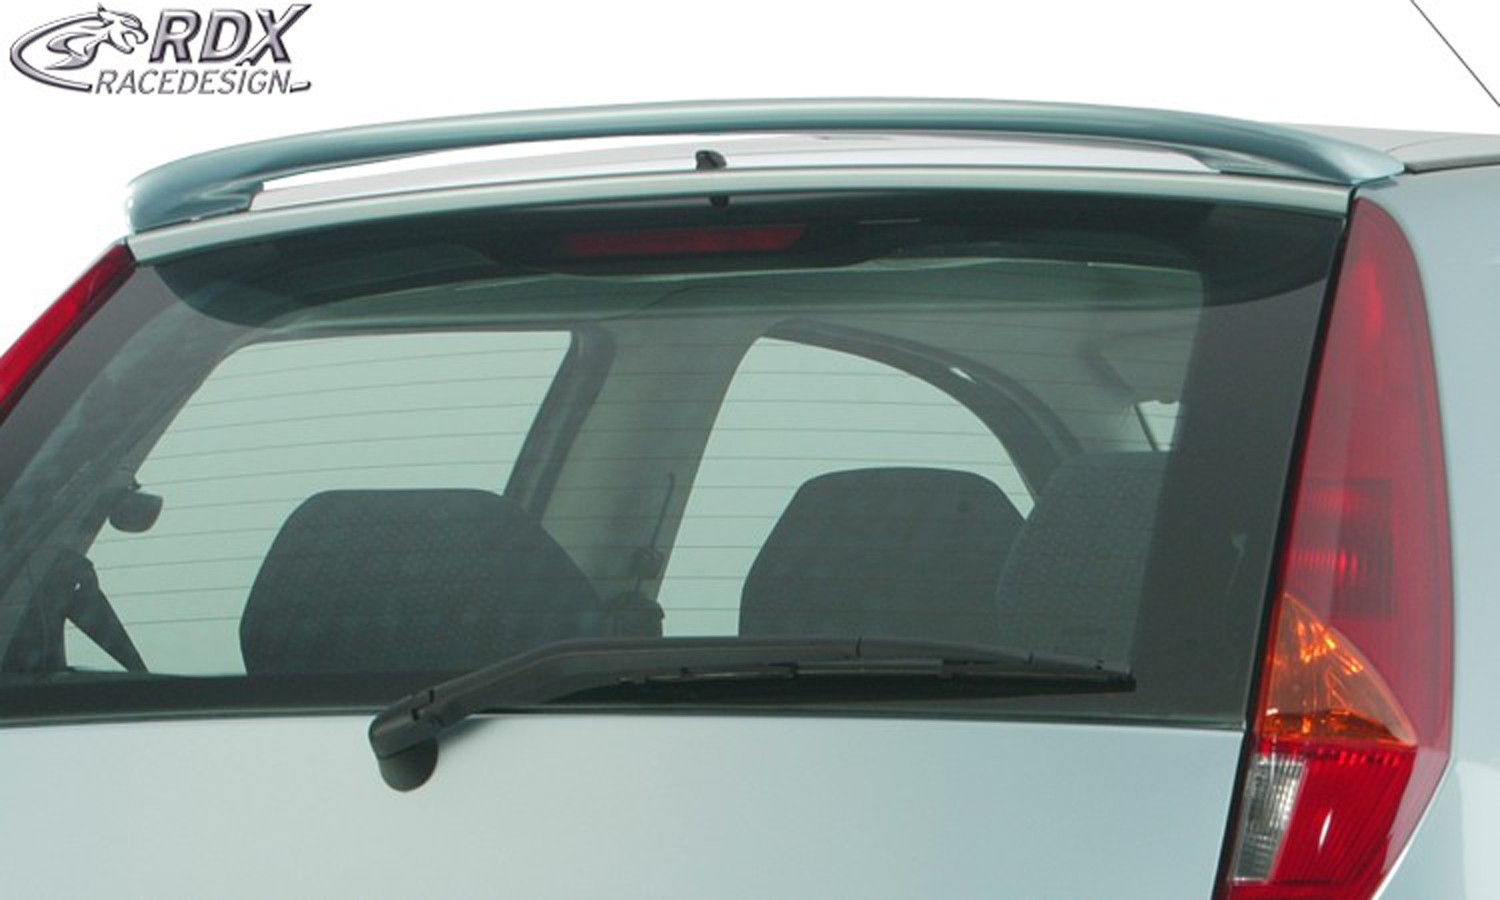 Dachspoiler Fiat Punto 2 (nur für 2/3türige Modelle) (PU-IHS)